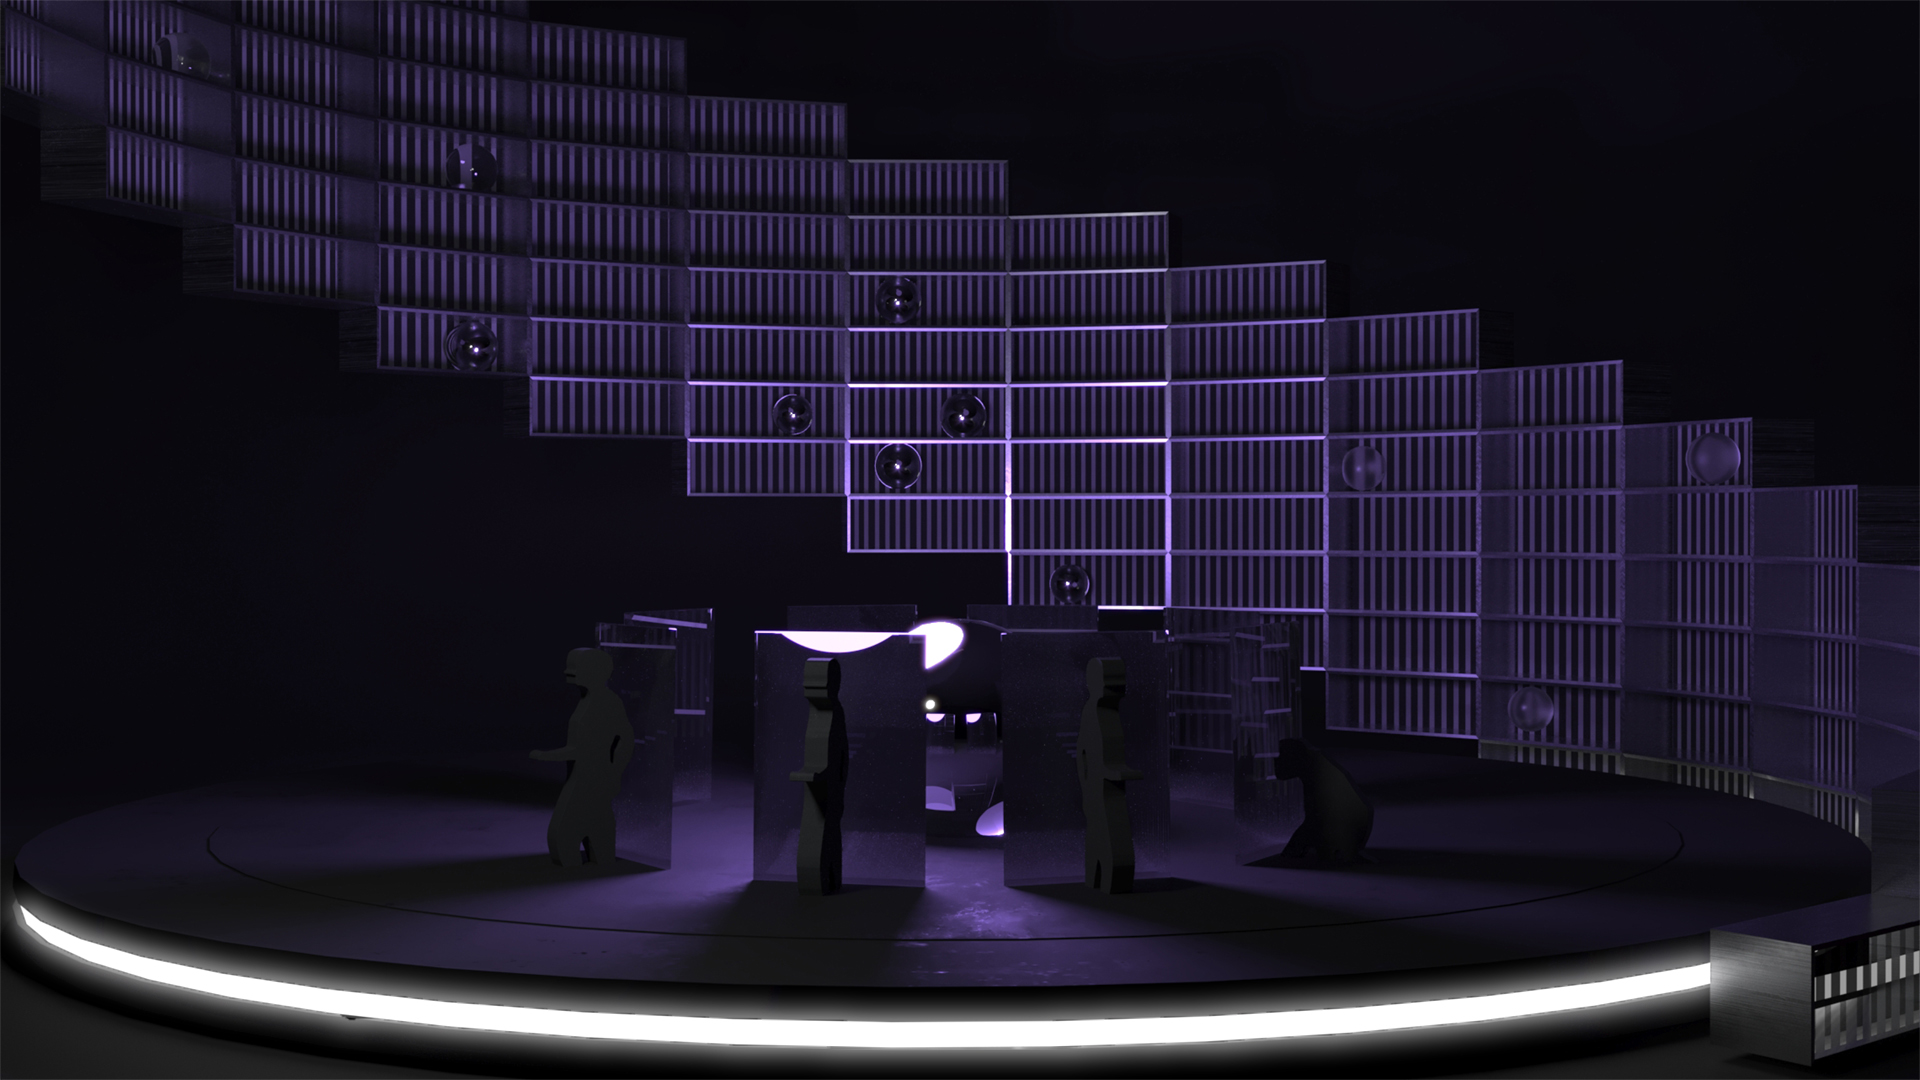 Wizualizacja przedstawiająca próbę odtworzenia scenografii do spektaklu „Constellations” będąca ćwiczeniem semestralnym. Forma umieszczona na okrągłym podeście z bocznym oświetleniem led oświetlona fioletowym światłem. Całość zaprezentowana na ciemnym tle. 